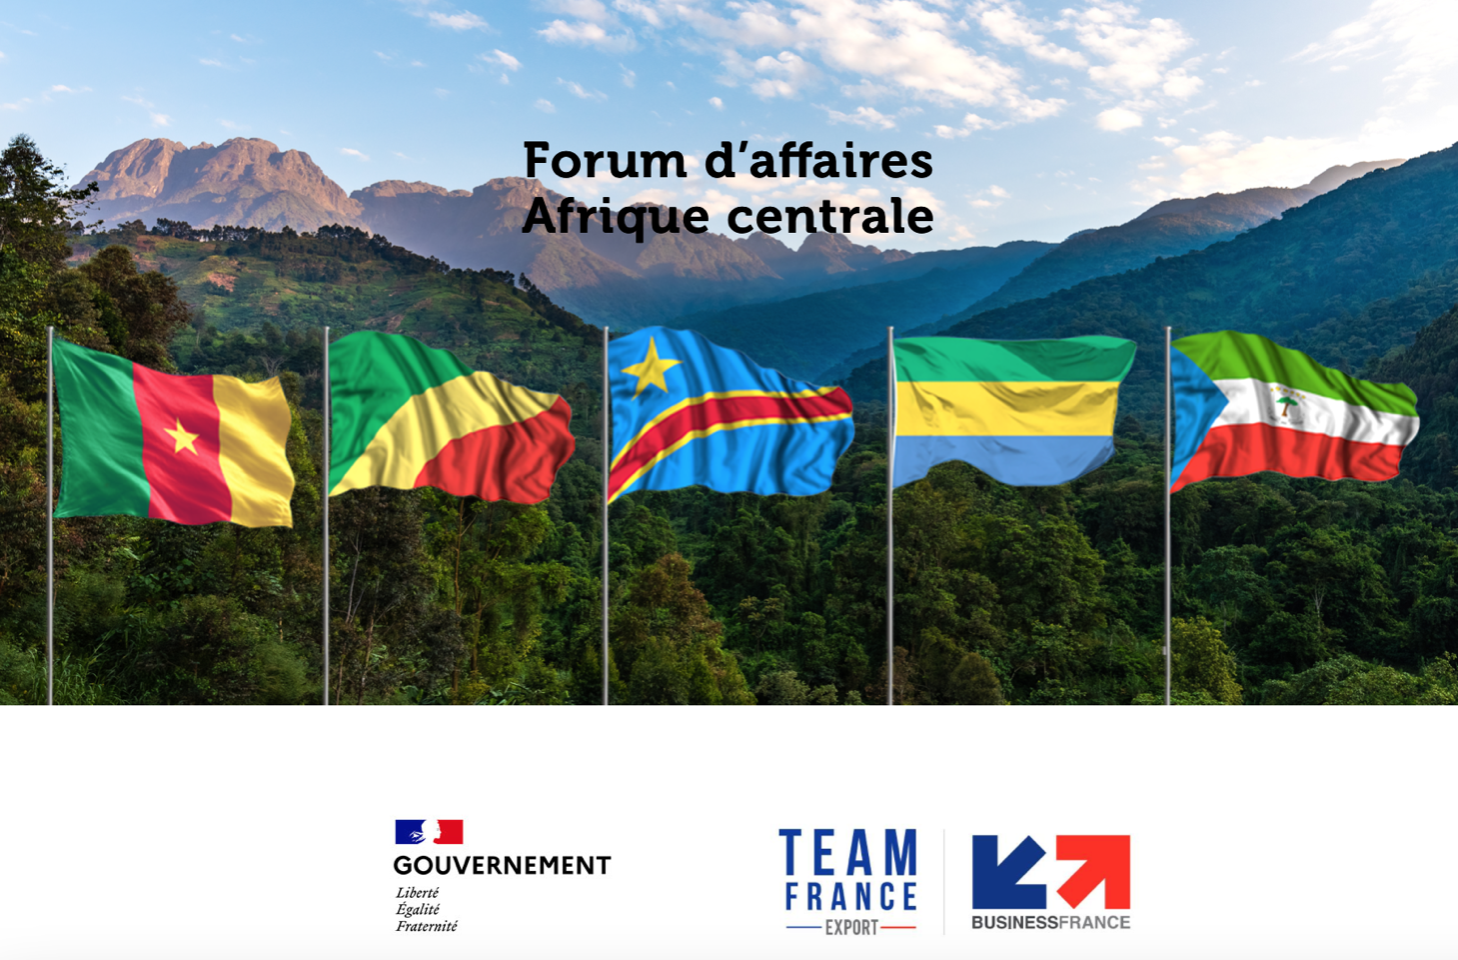 Forum d’Affaires Afrique centrale des 28-29 juin : la liste des intervenants dévoilée